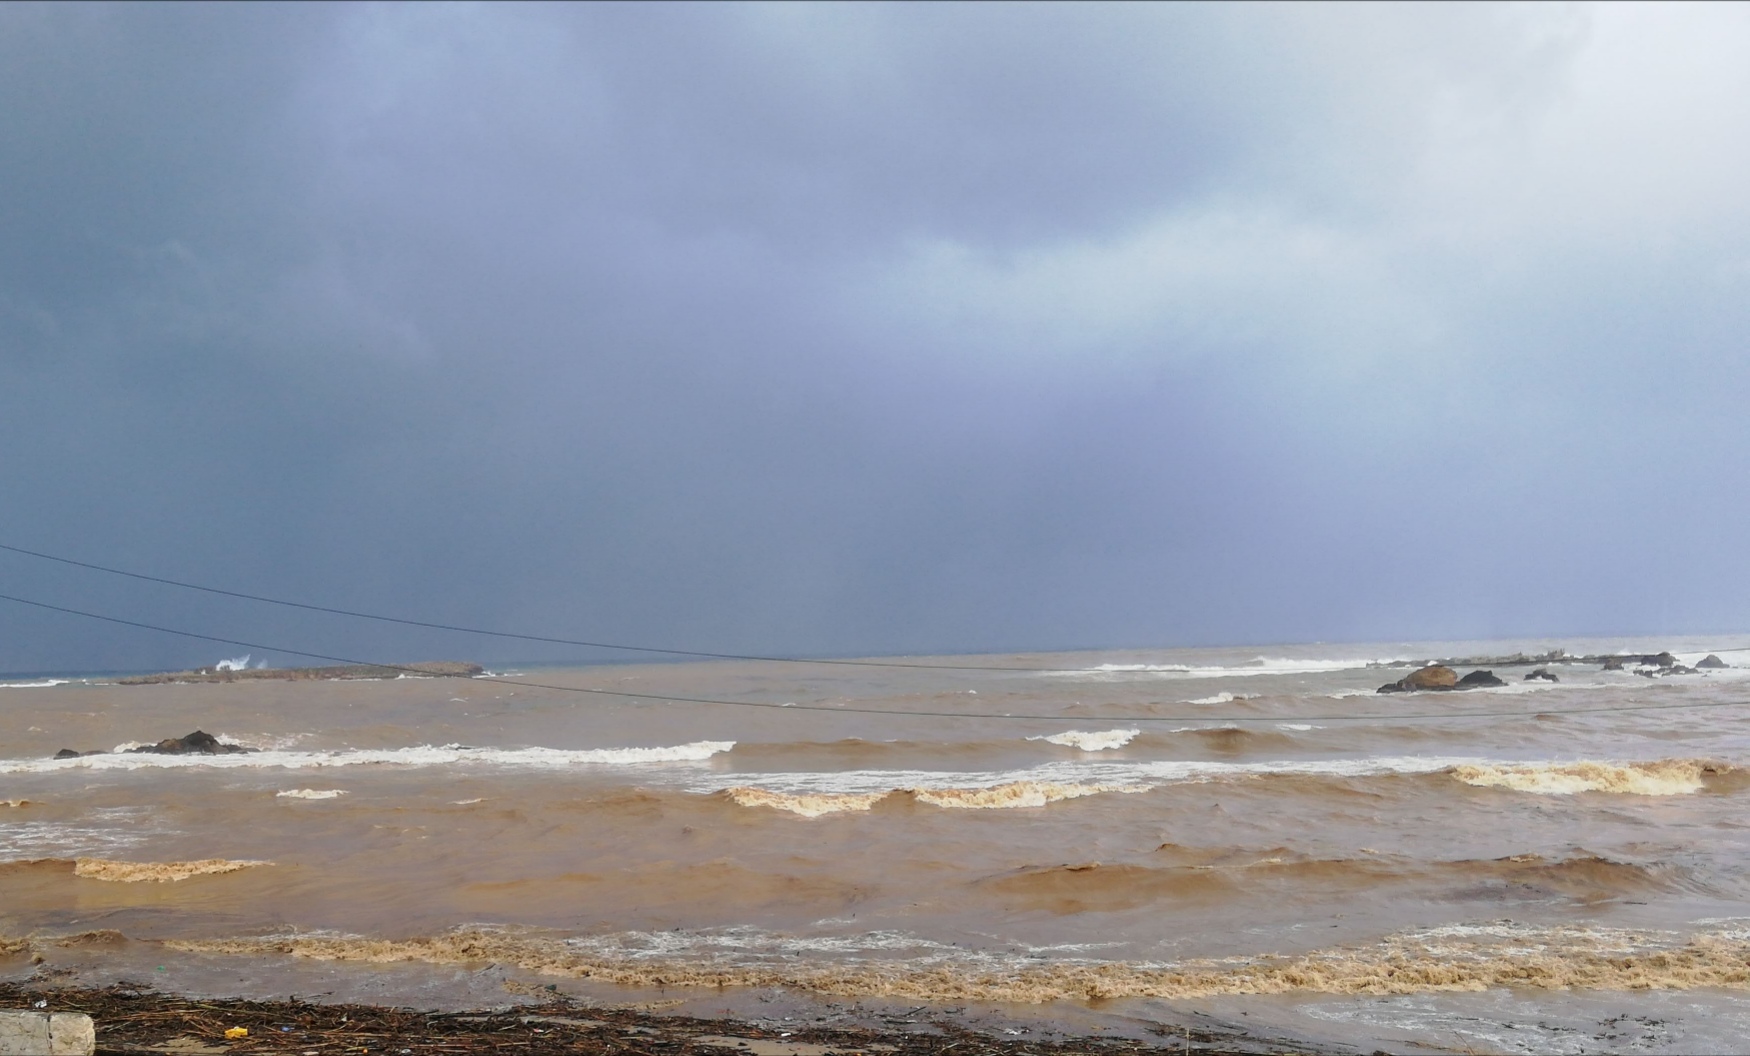 Γέμισε σκουπίδια η θάλασσα της Νέας χώρας μετά τις έντονες βροχές (φωτο)